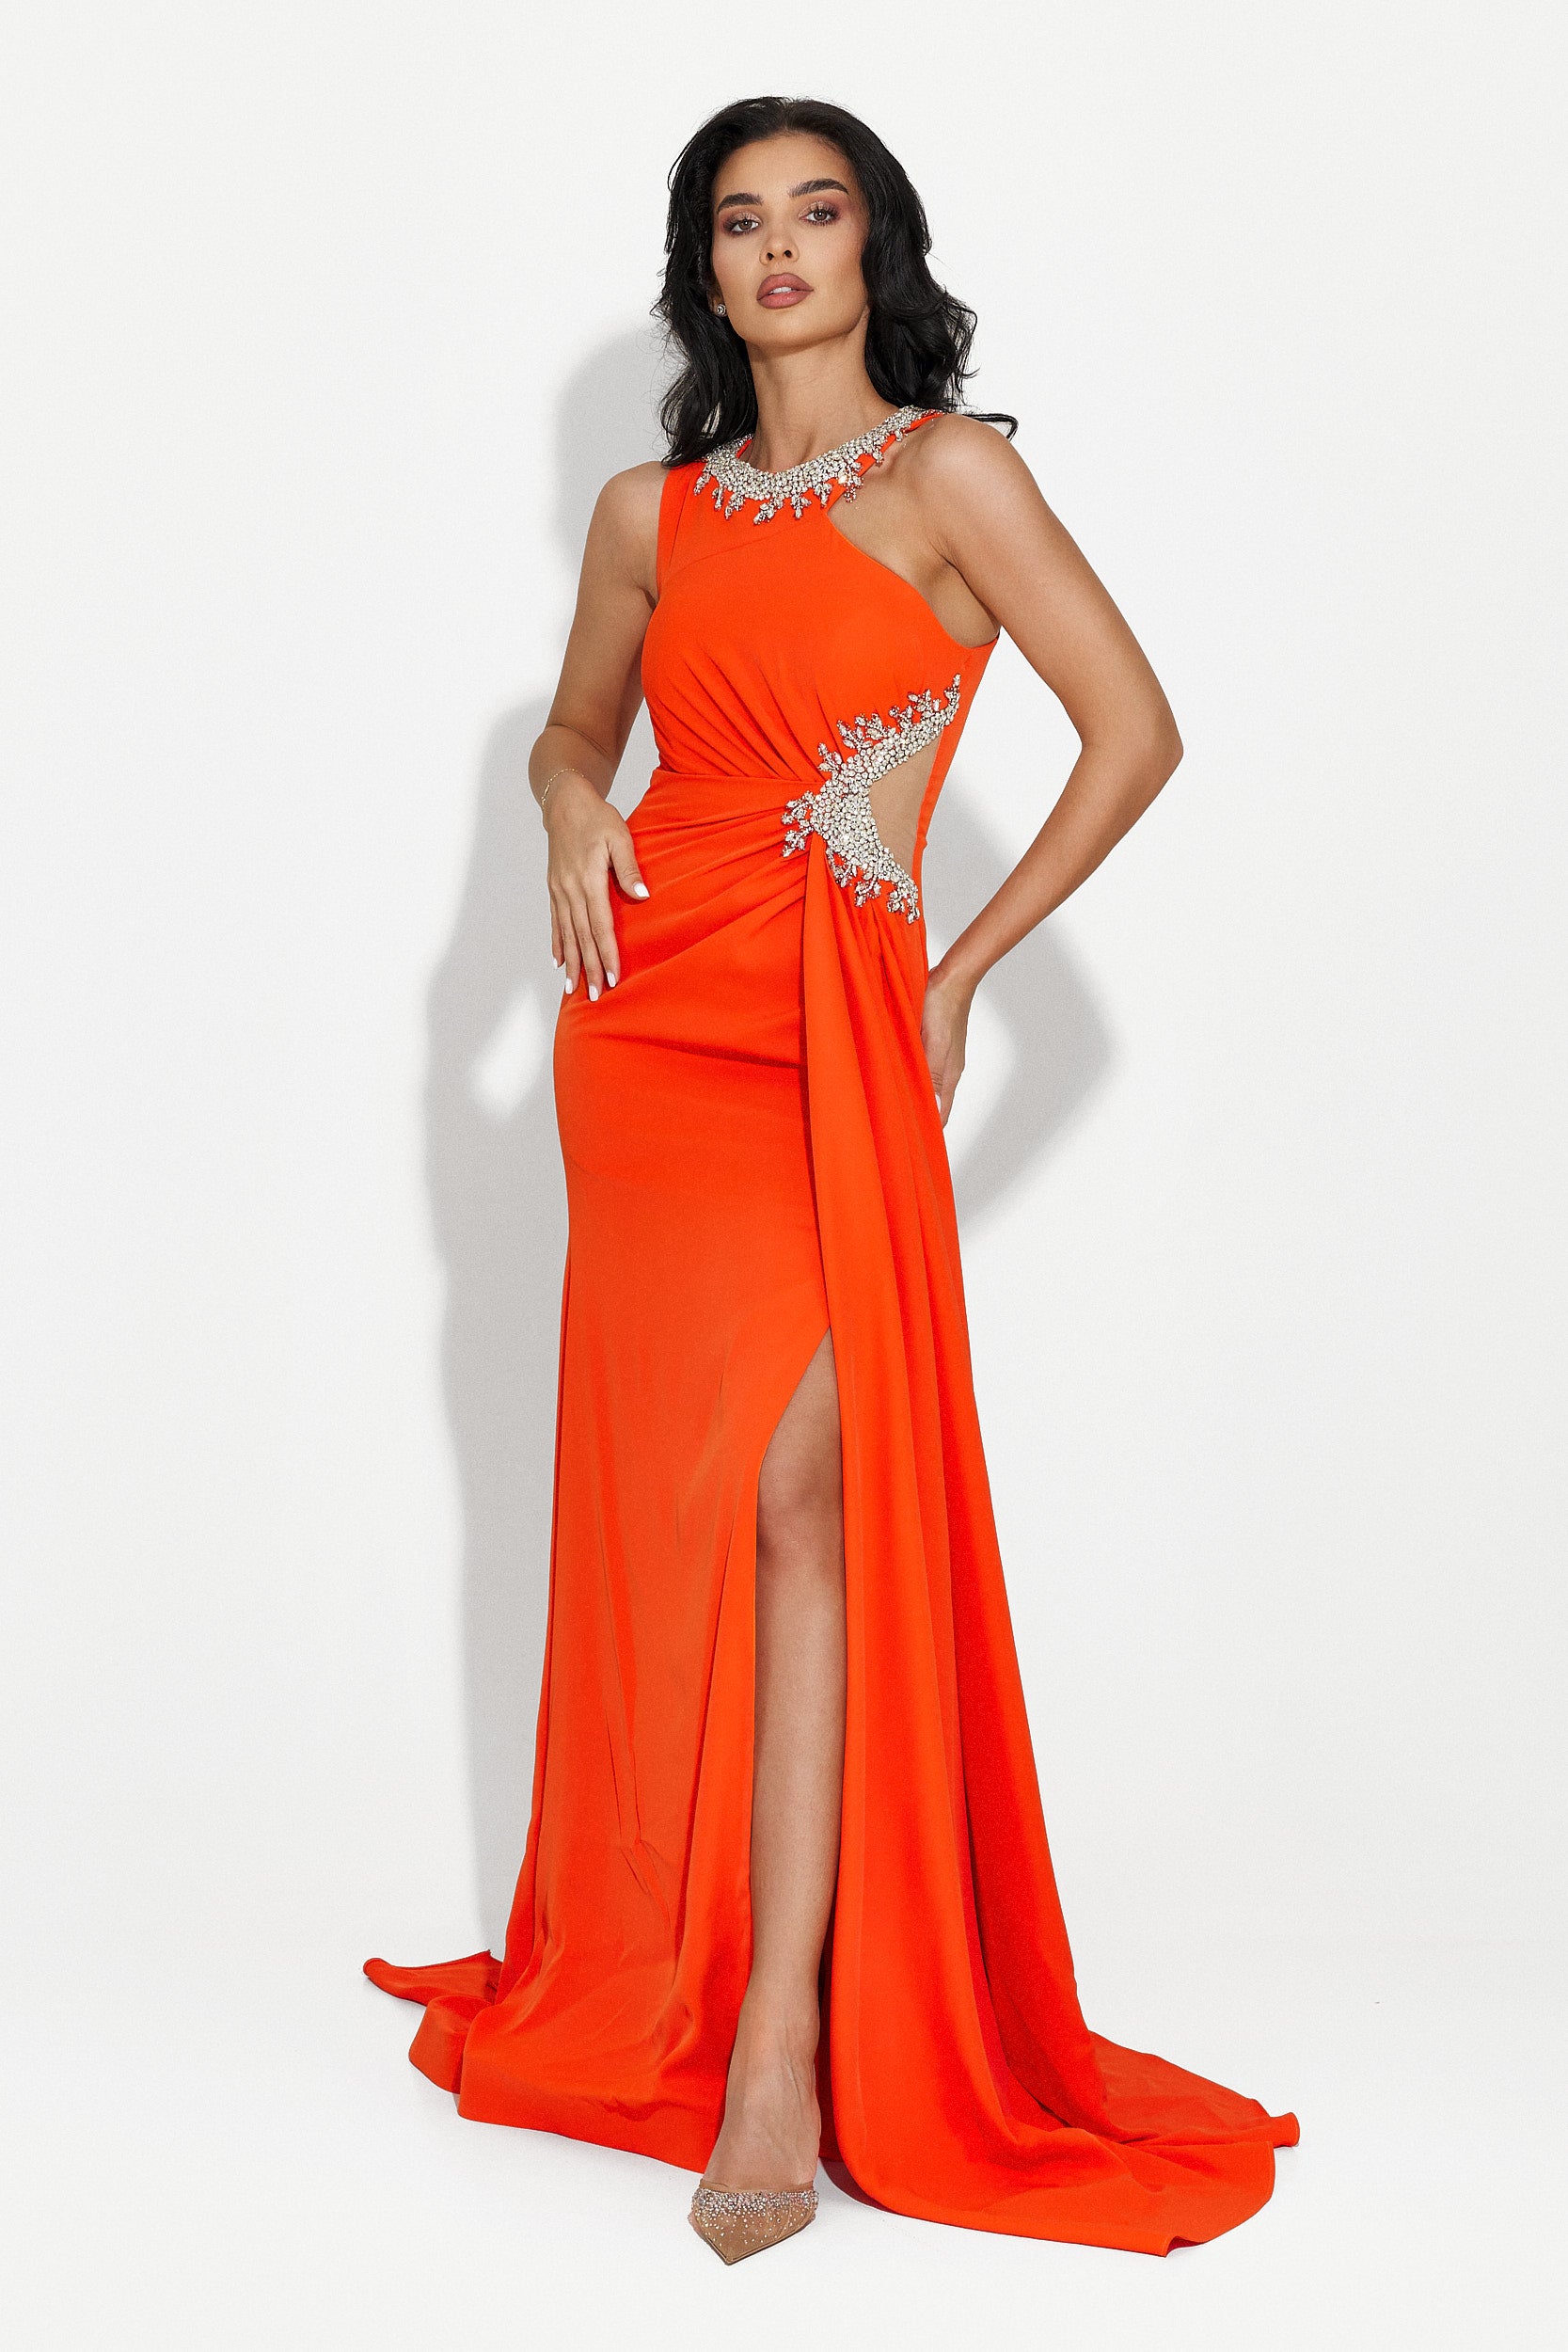 Alexea Bogas hosszú narancssárga női ruha